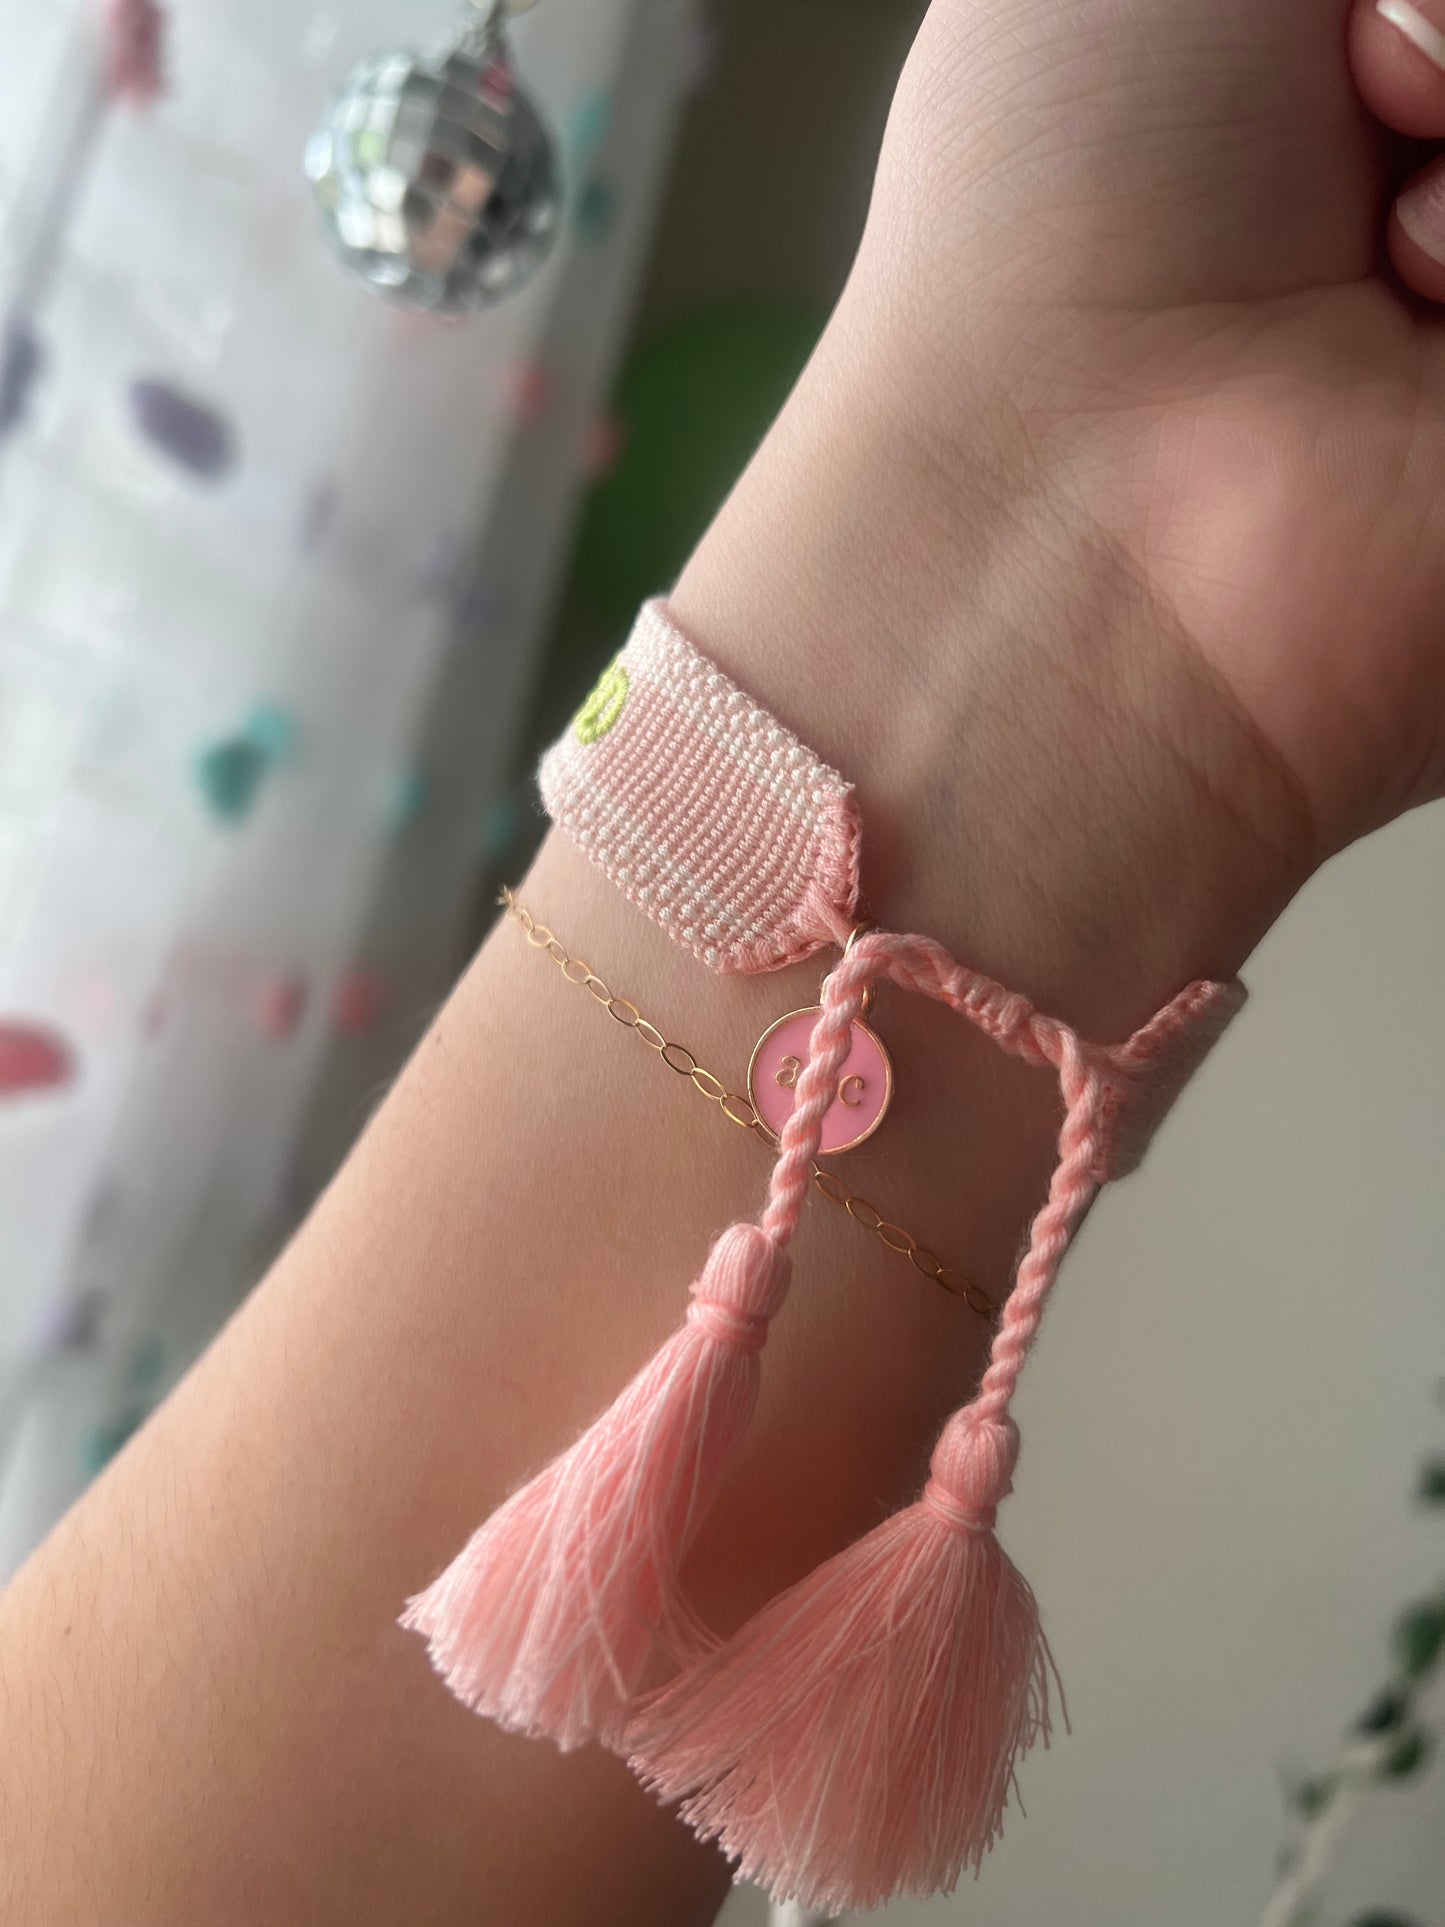 Embroidered Friendship Bracelet